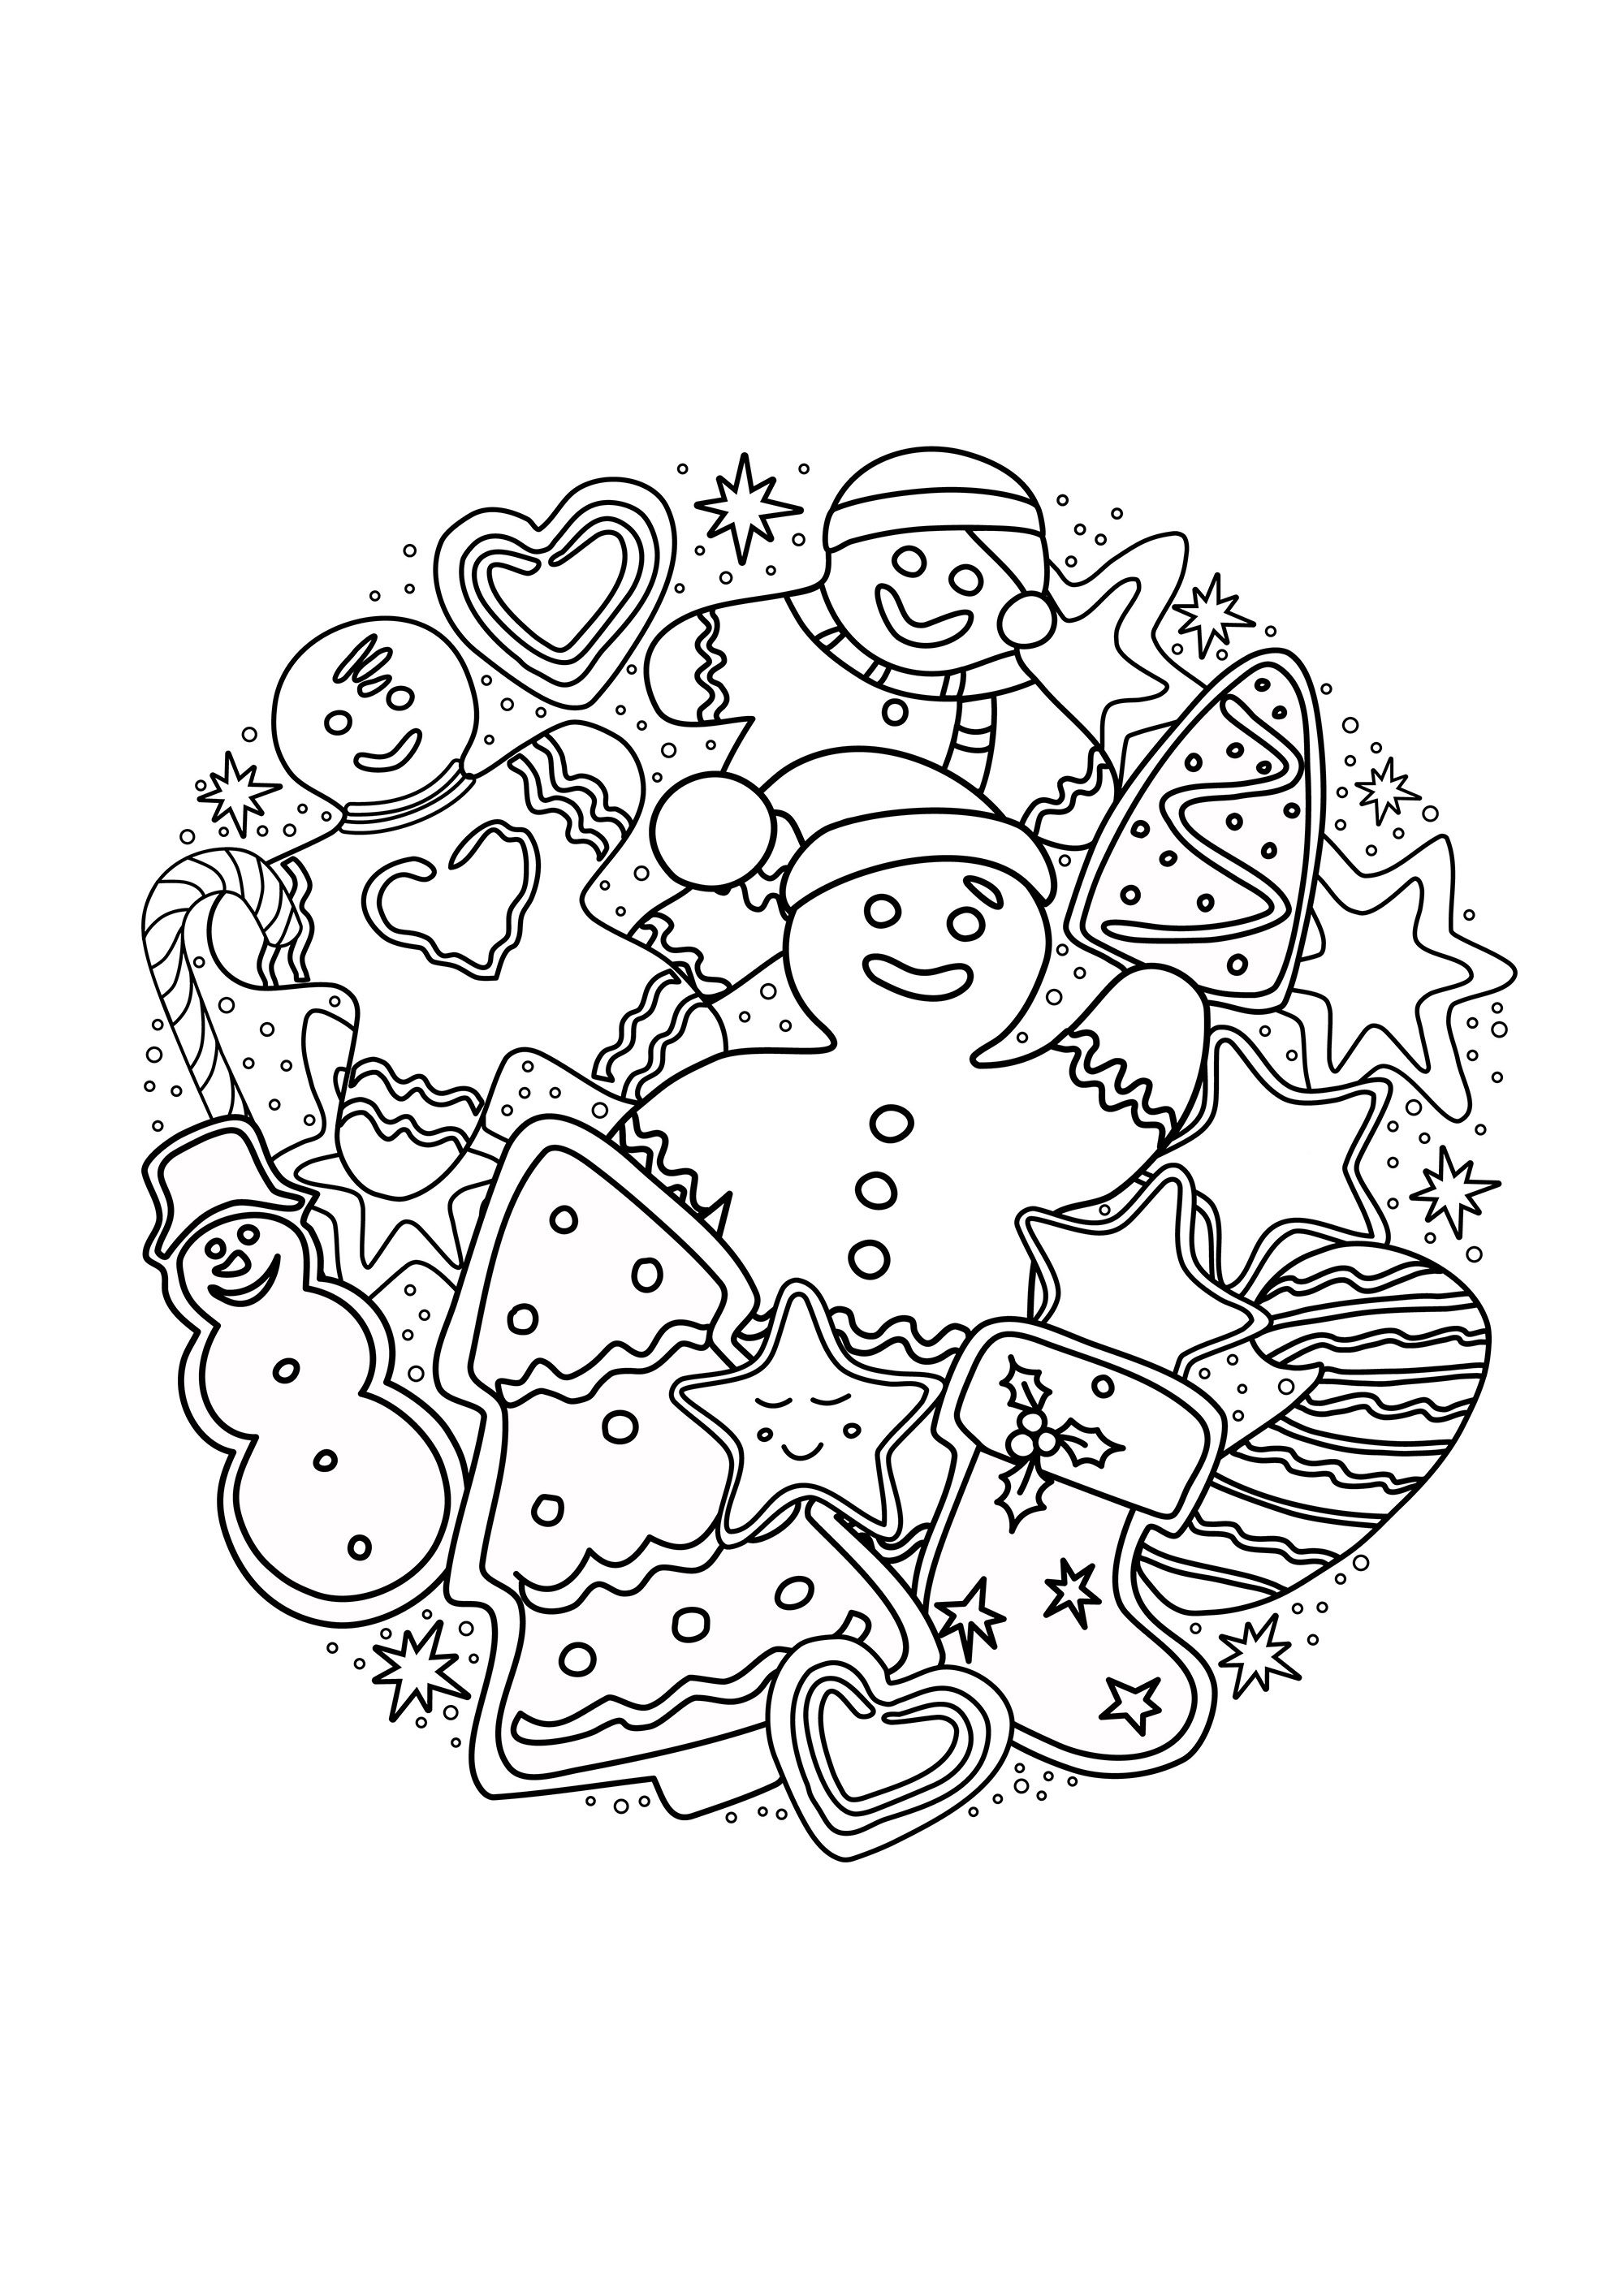 Hommes de pain d'épice et gateaux représentant des sapins, bonhommes de neige, friandises de Noël .., Source : 123rf   Artiste : dovina